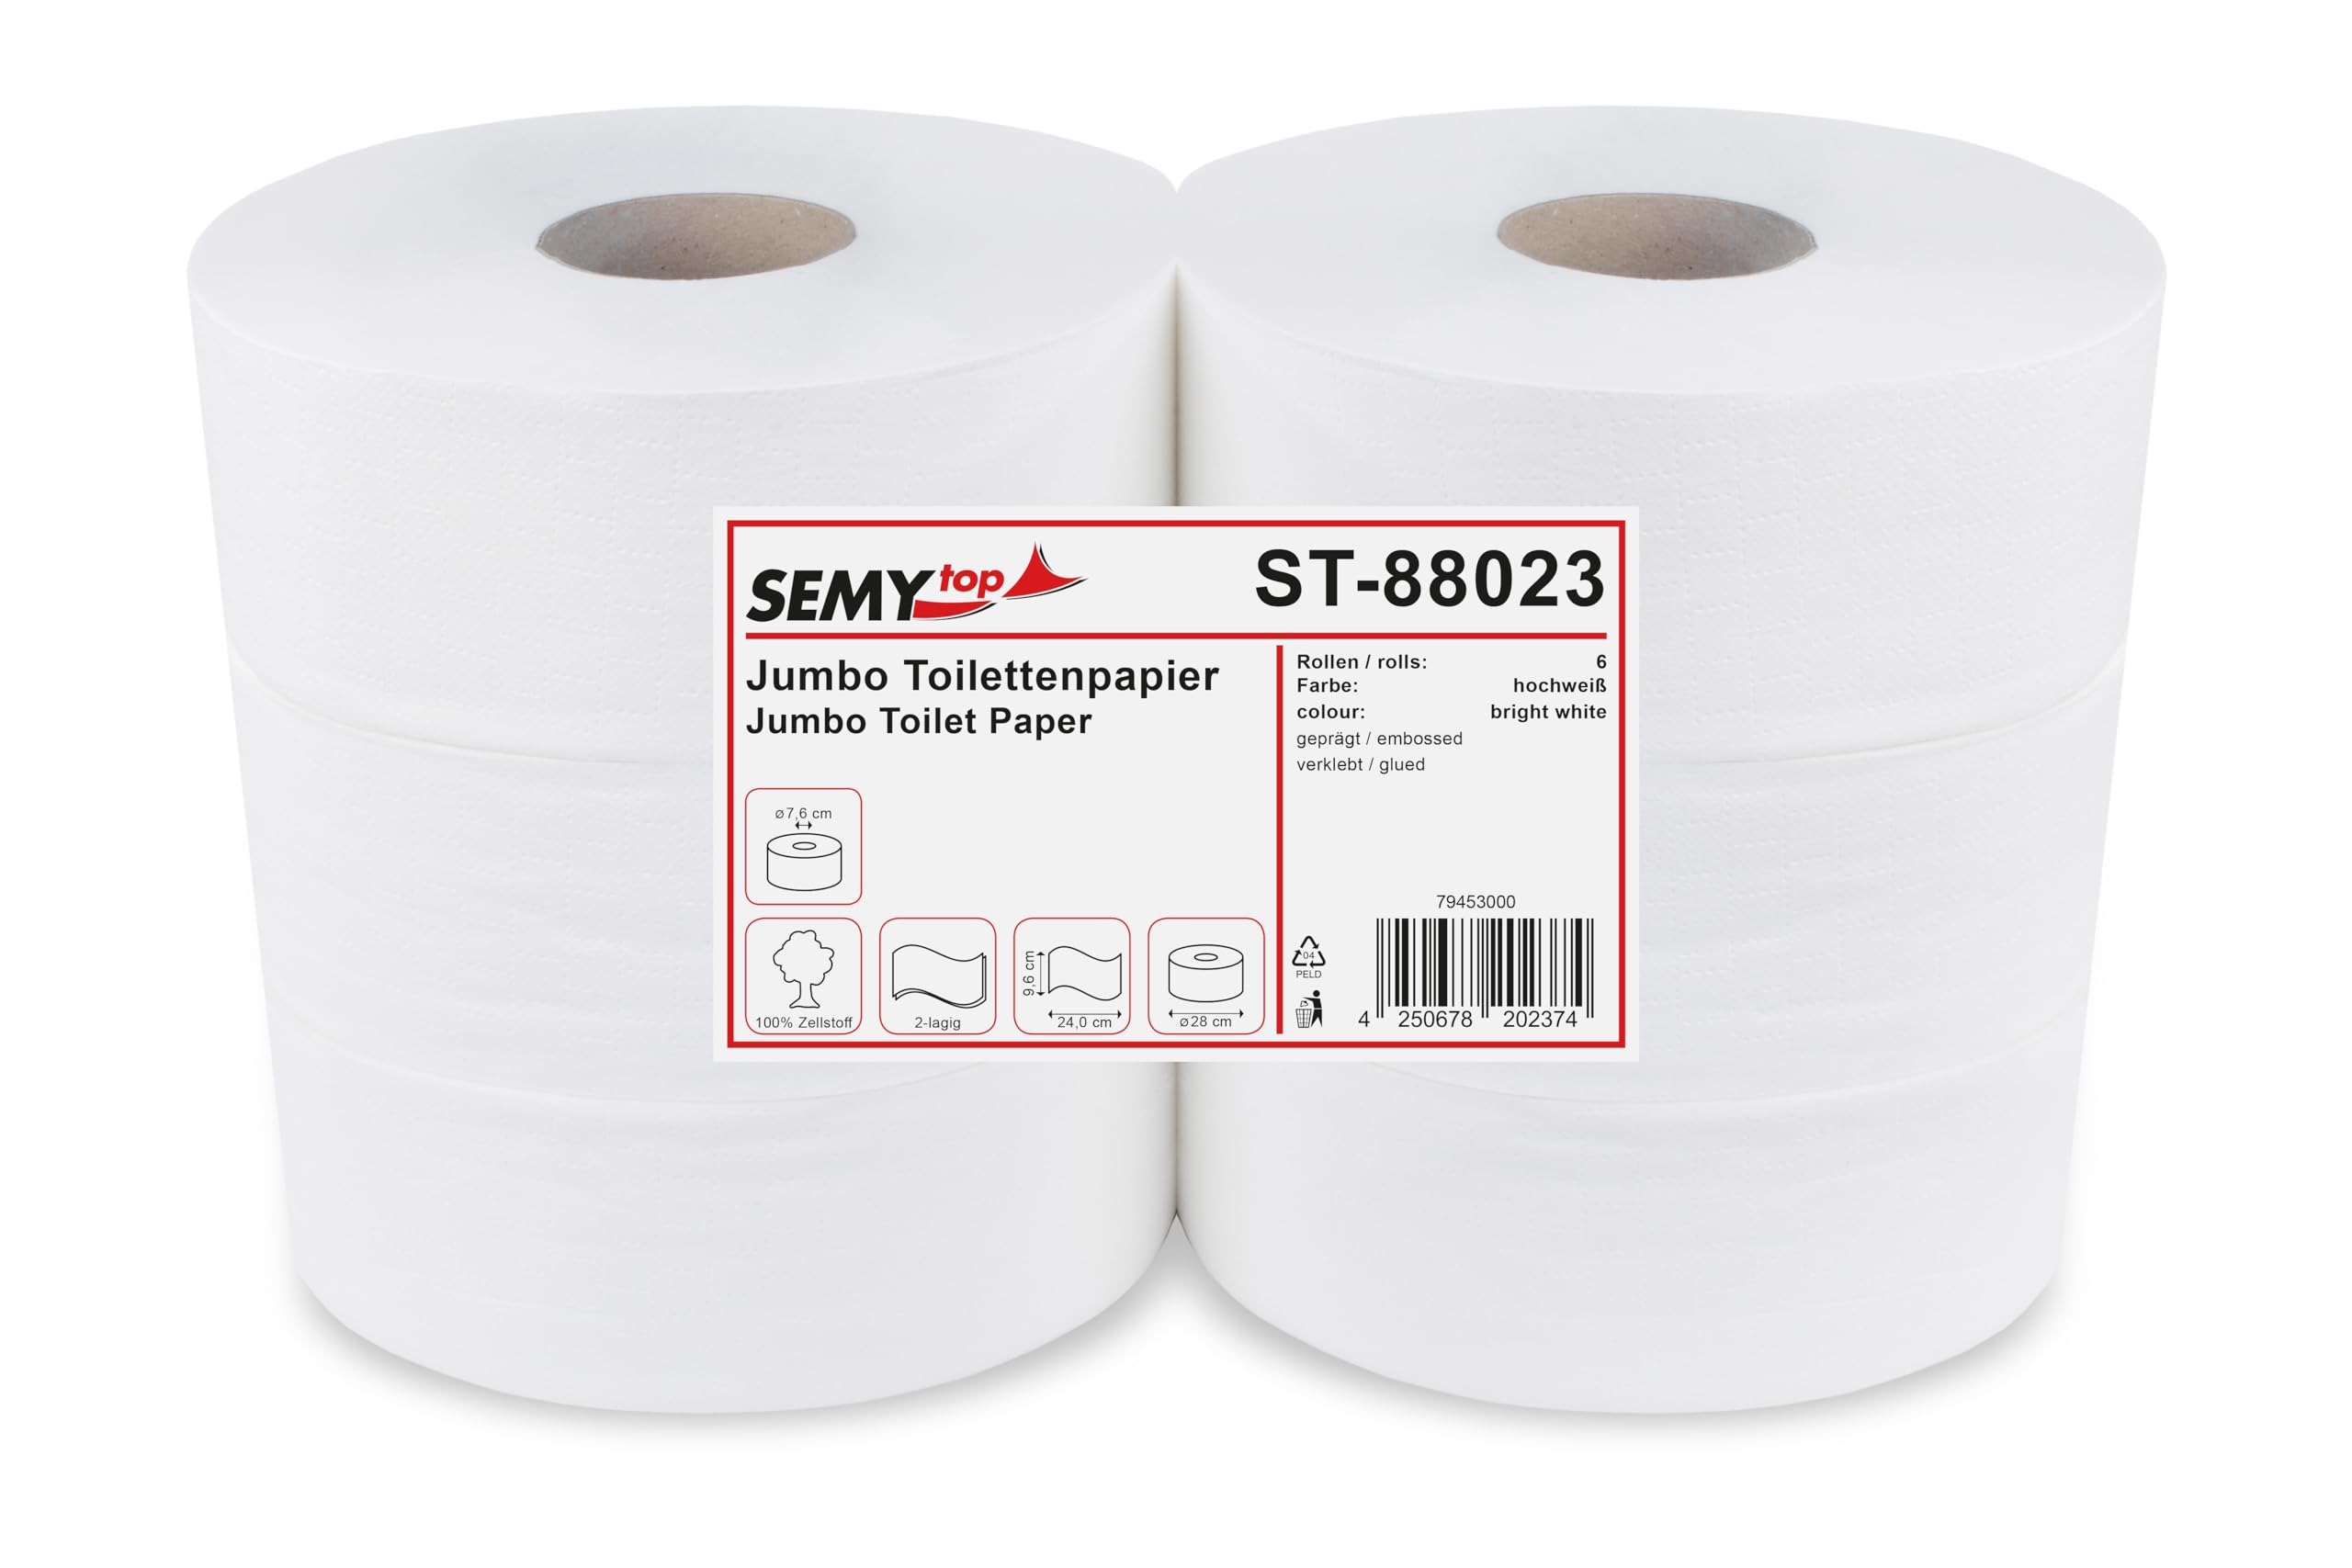 Semy Top ST-88023 Jumbo-Toilettenpapier, 2-lagig, Durchmesser 28 cm, Hochweiß (6-er Pack)